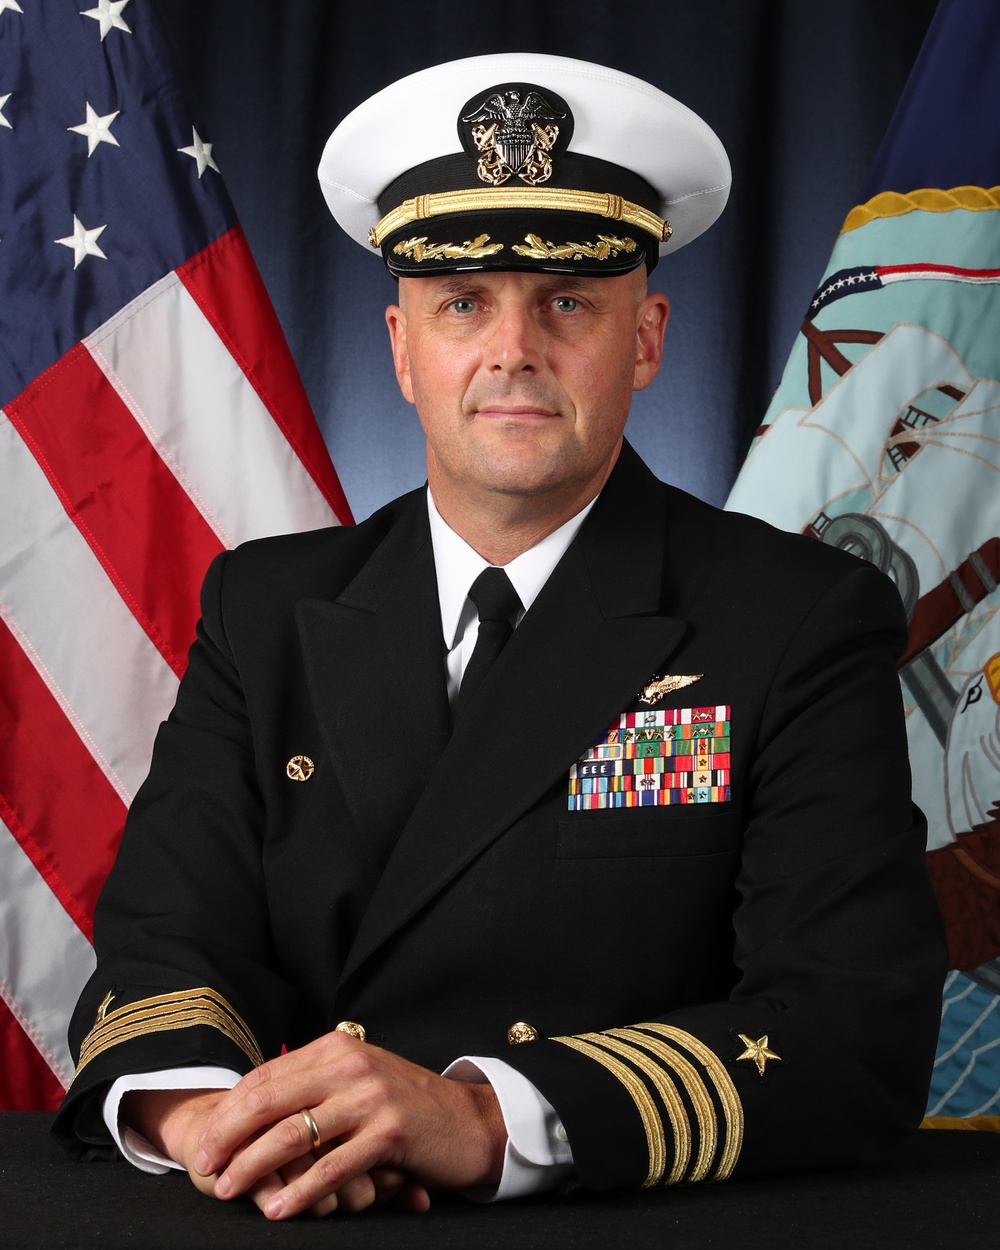 Capt. John J. Cummings